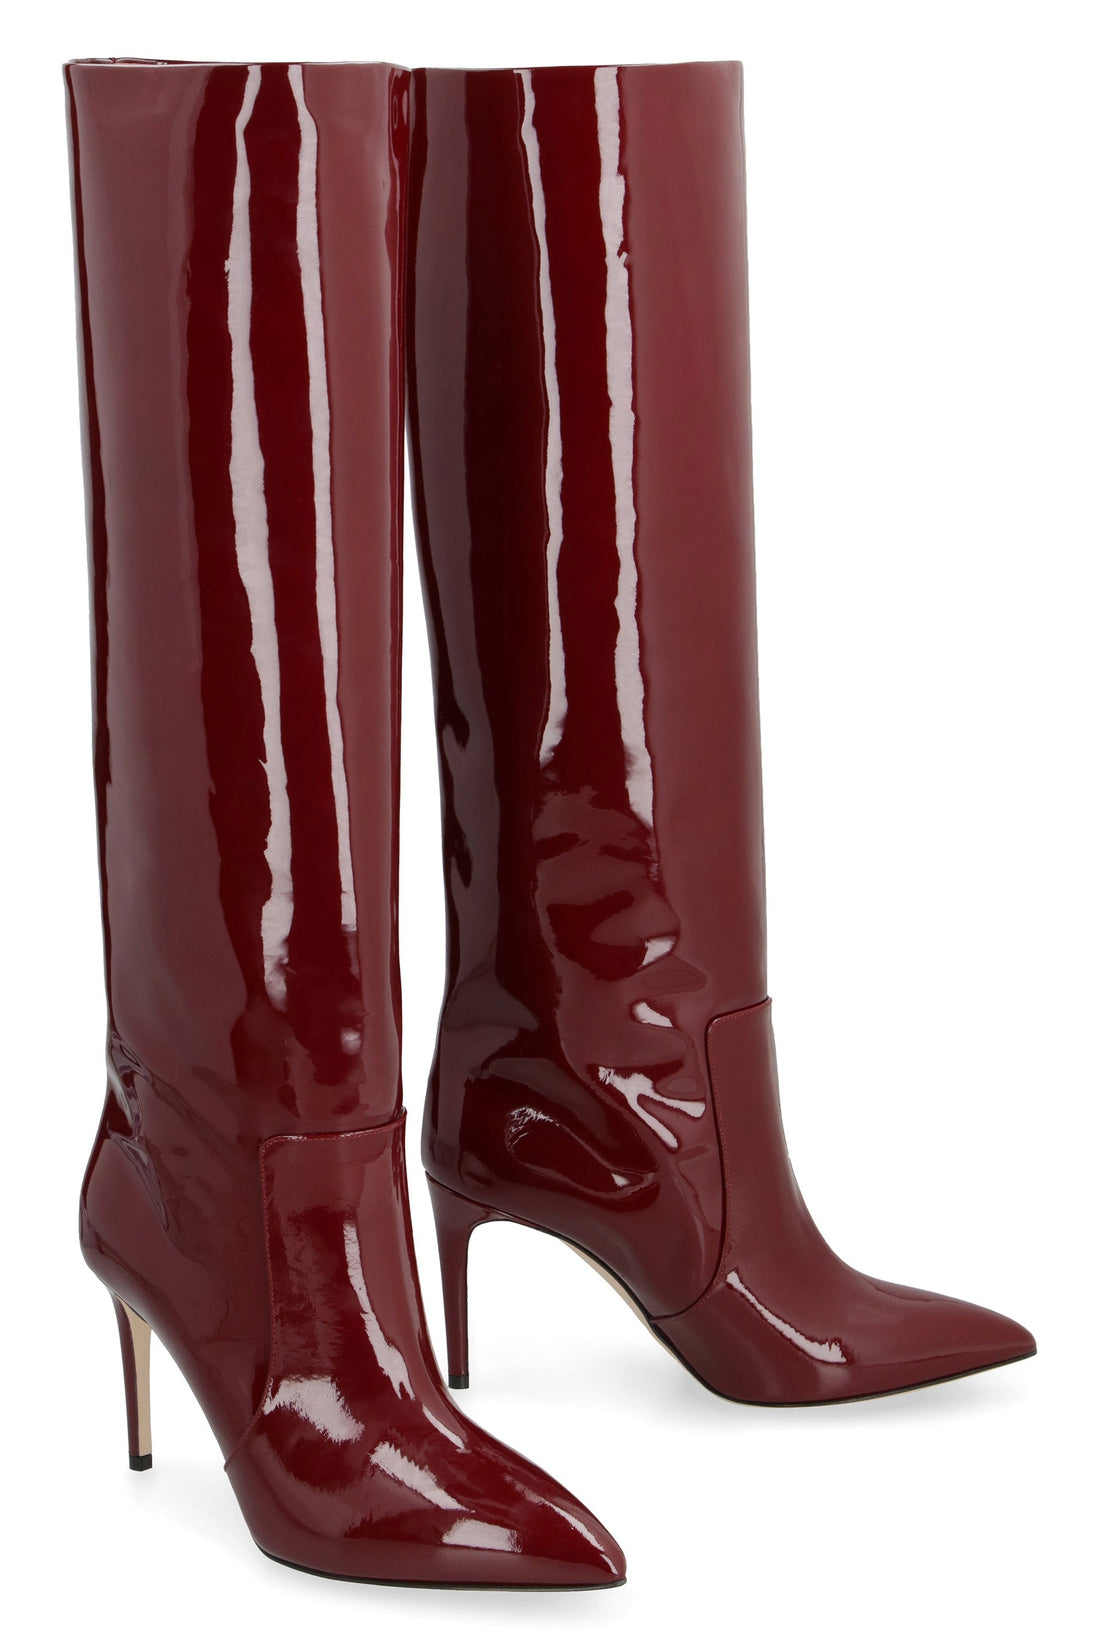 Paris Texas-OUTLET-SALE-Eva patent leather boots-ARCHIVIST